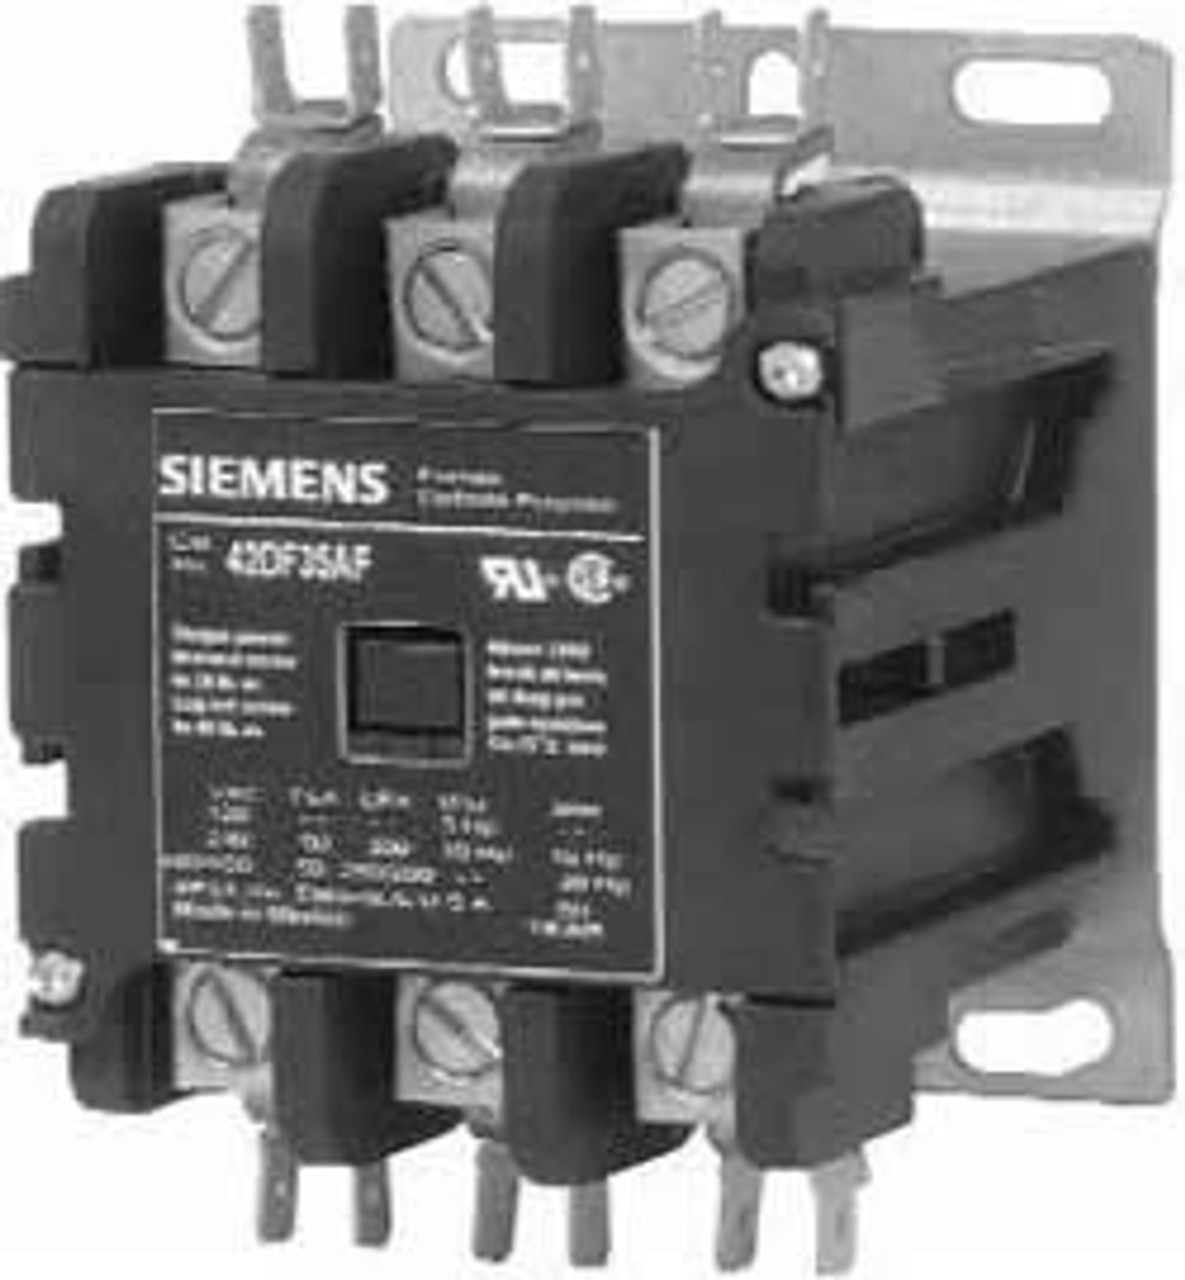 Siemens/Furnas 42DF35AJ contactor